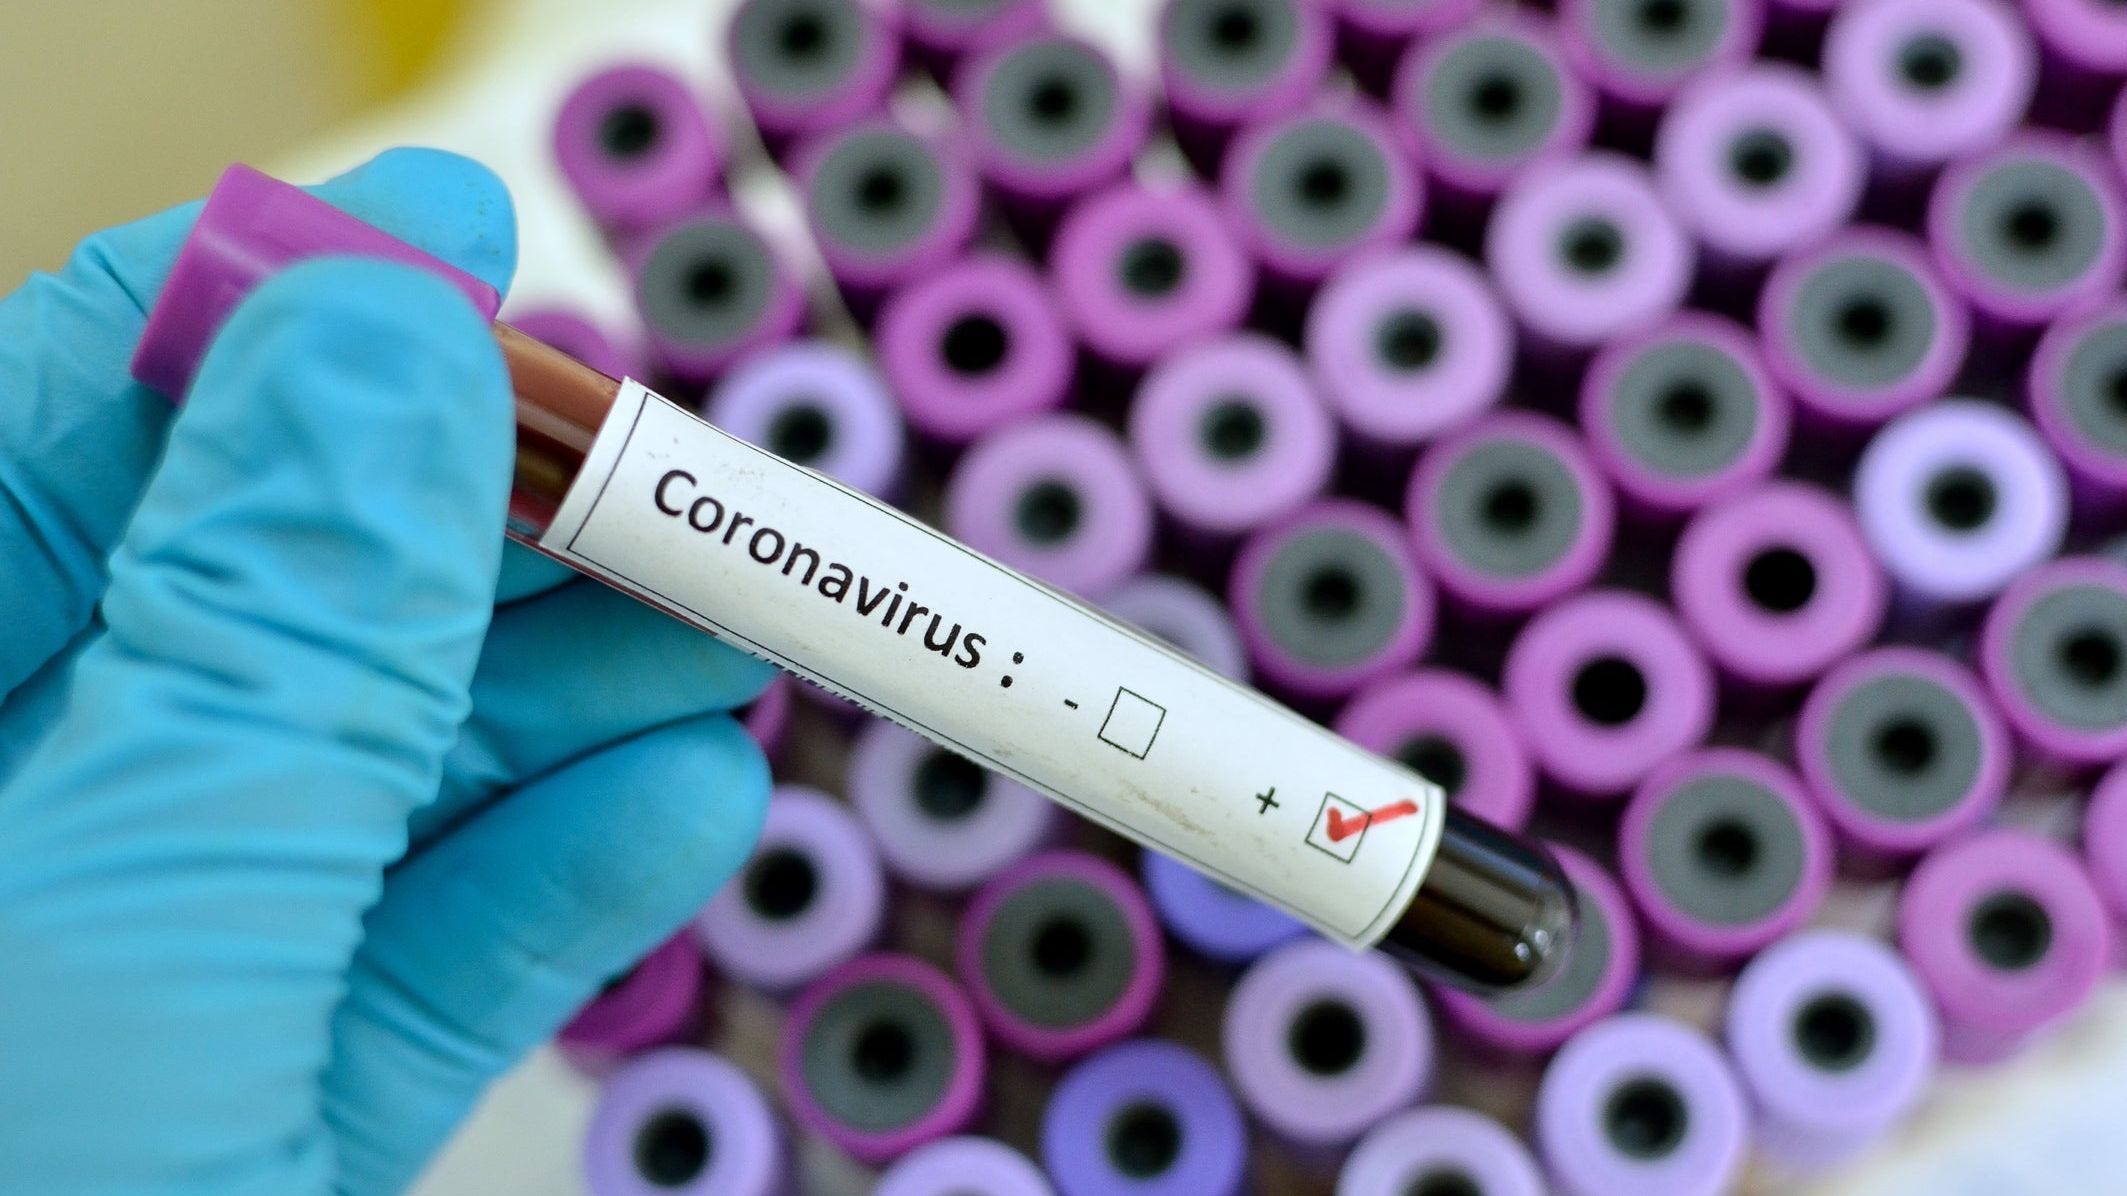 coronavirus vial